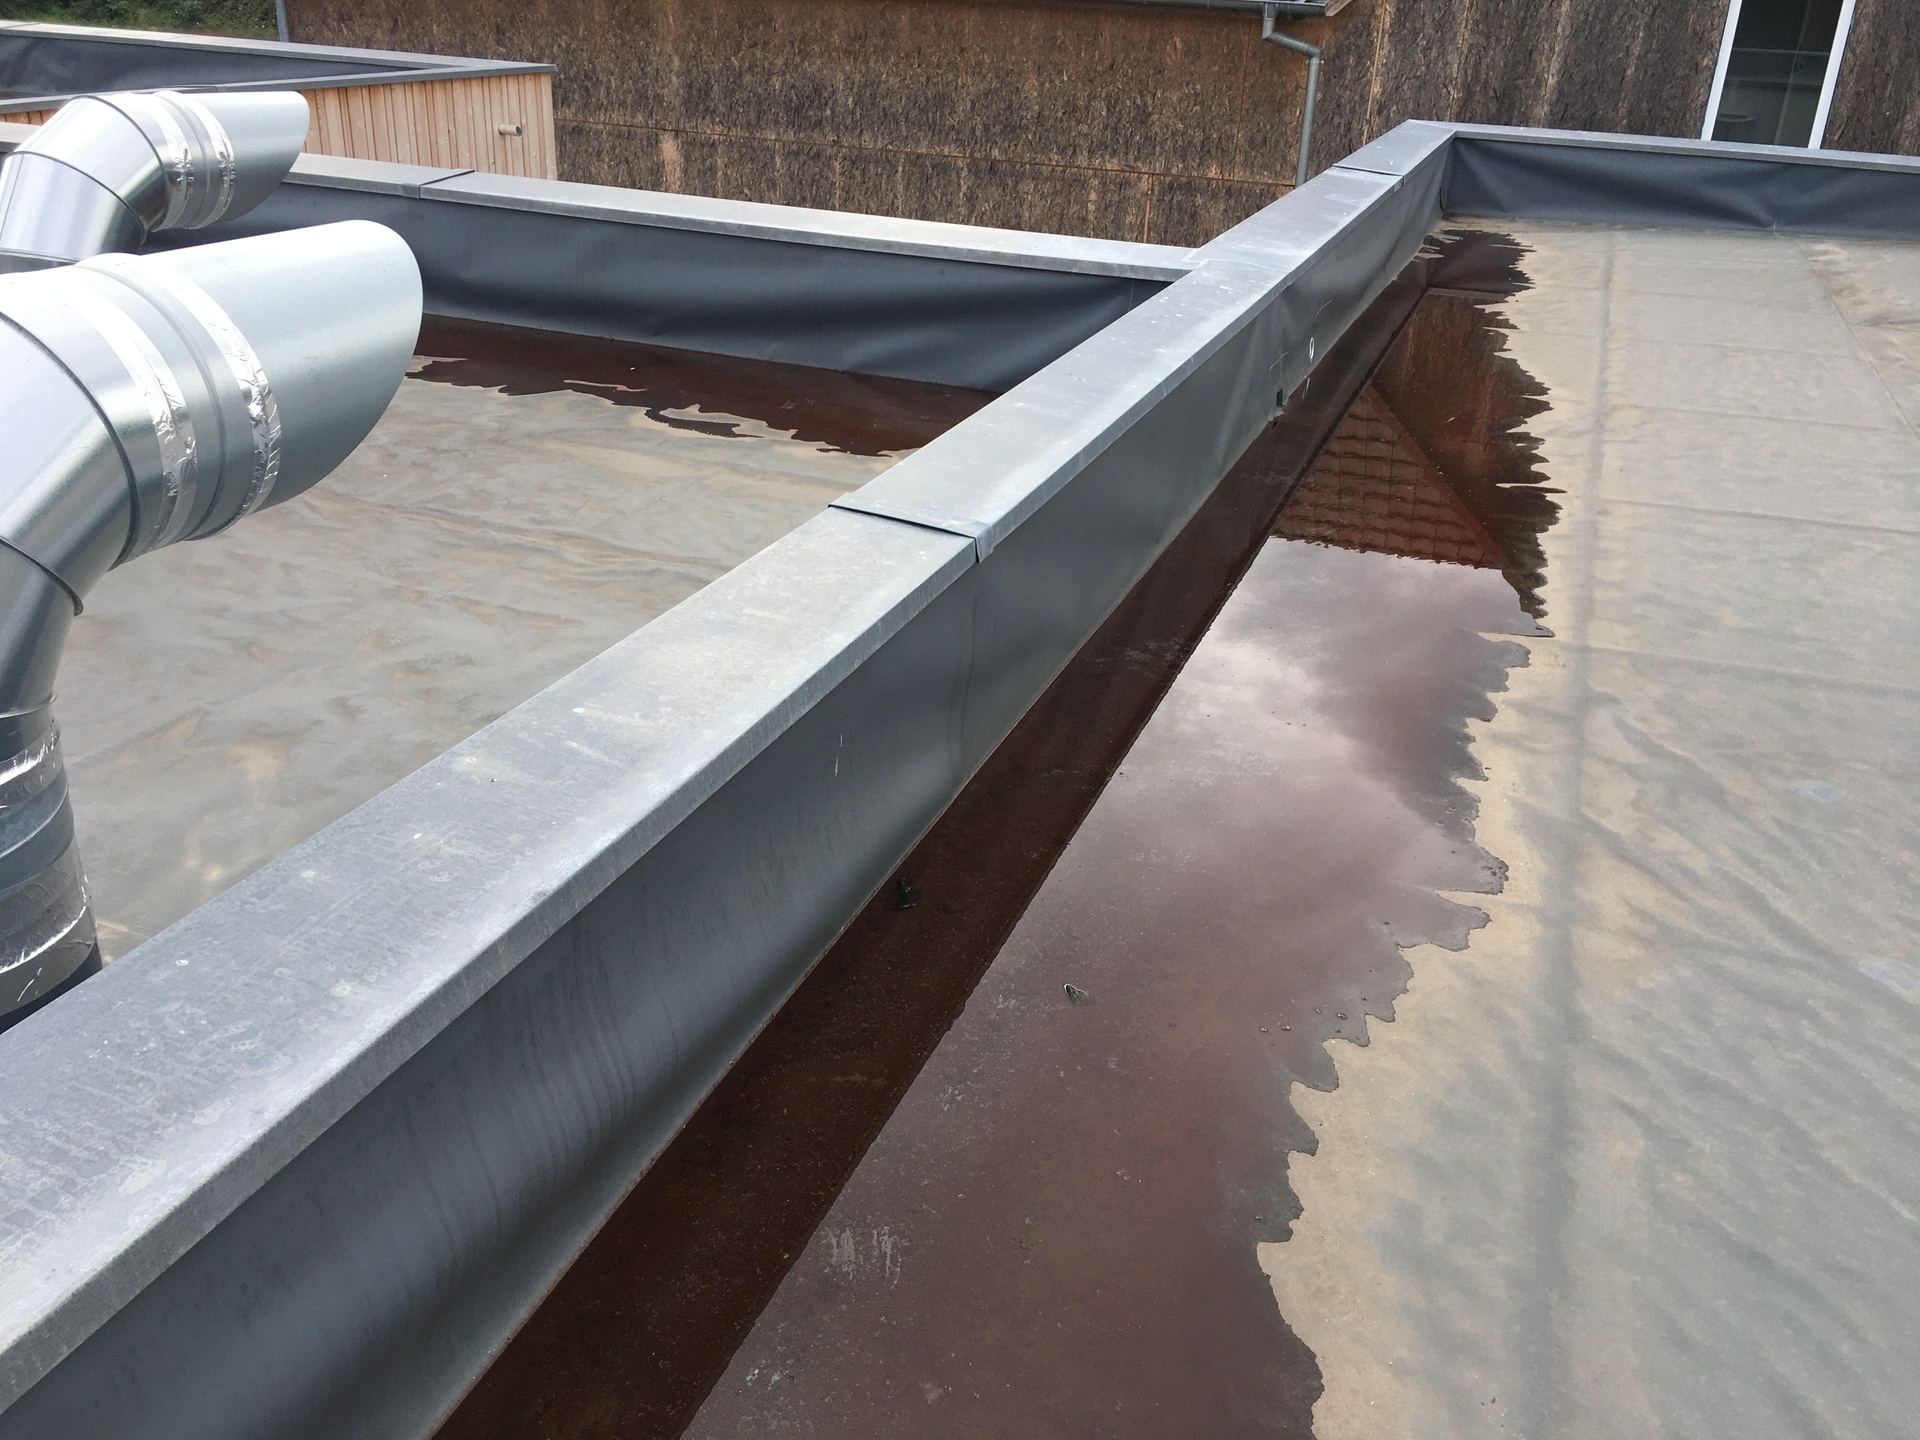 Comment traiter les stagnations d'eau sur une toiture ...